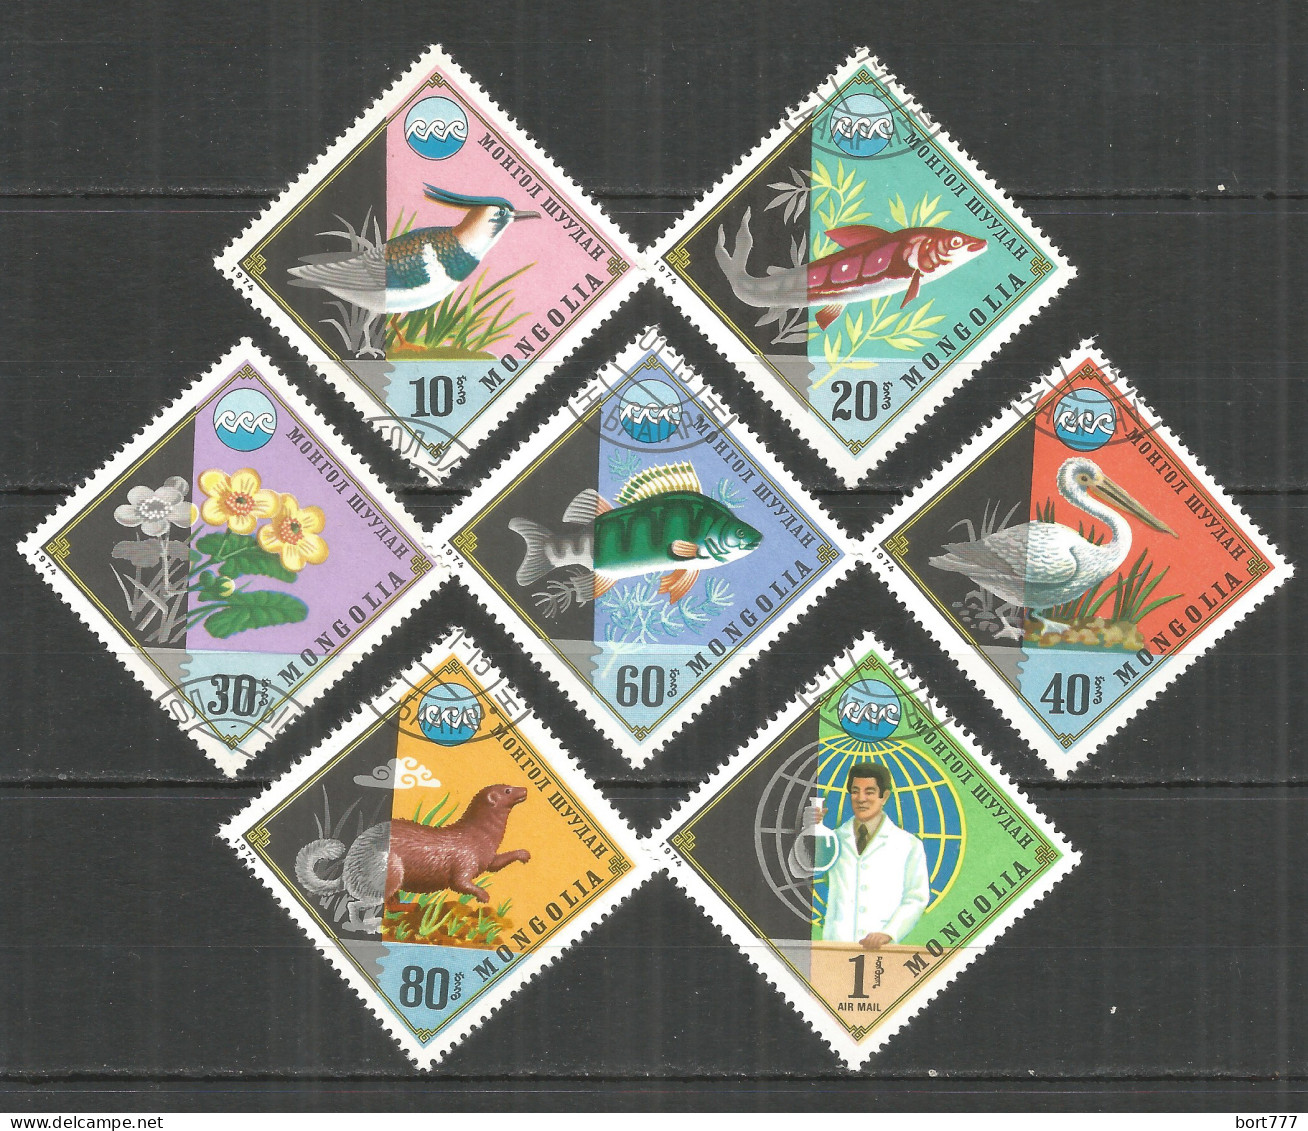 Mongolia 1974 Used Stamps CTO Fish - Mongolia